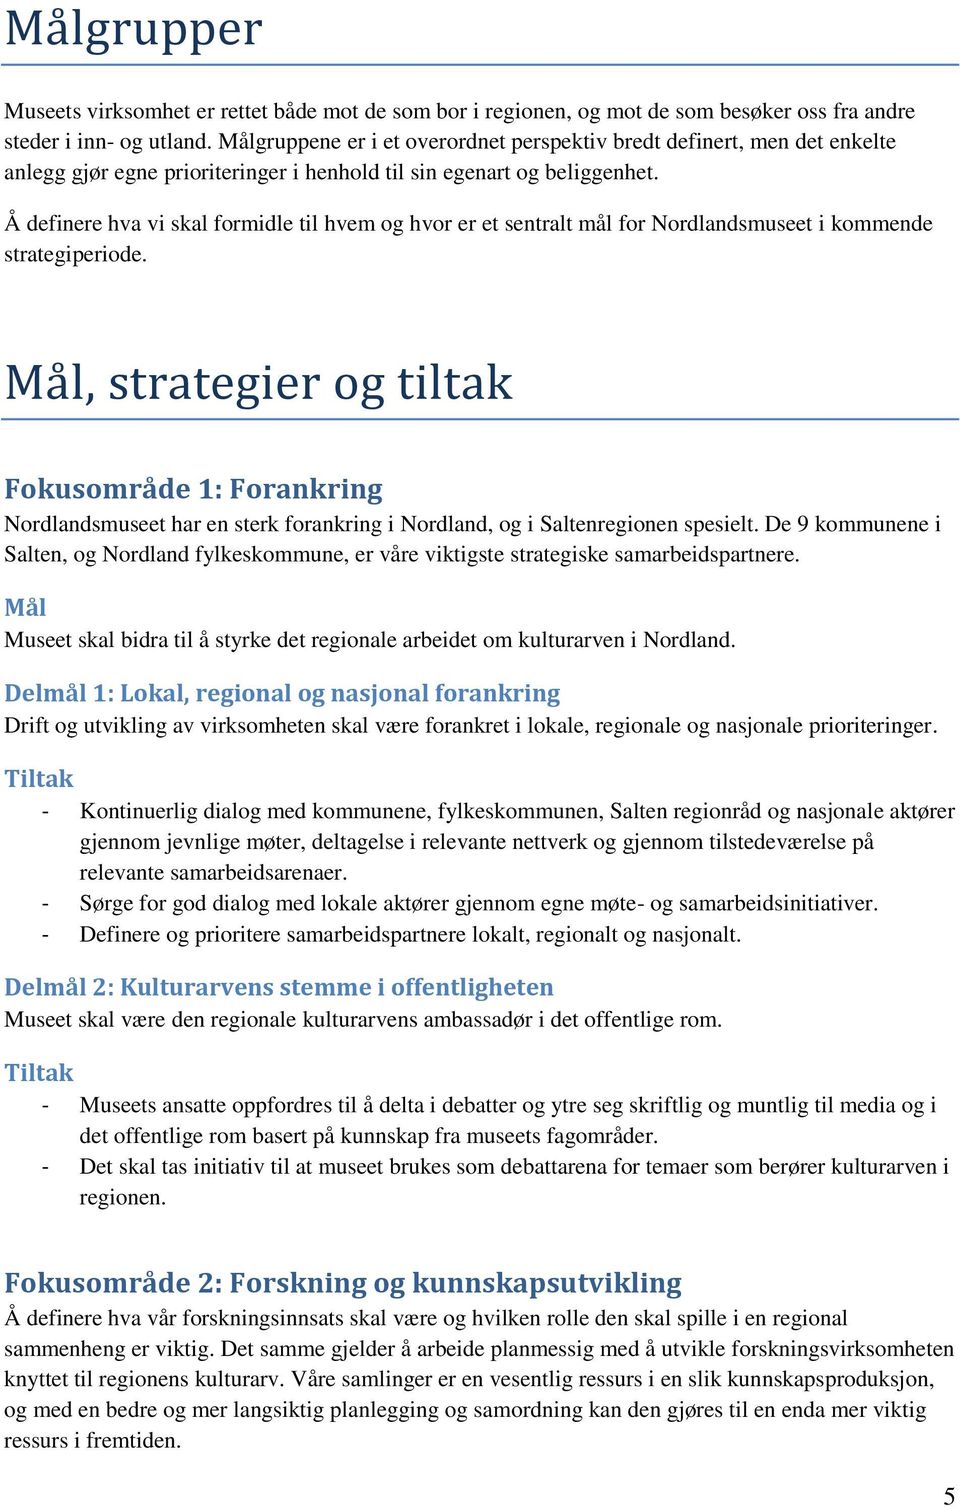 Å definere hva vi skal formidle til hvem og hvor er et sentralt mål for Nordlandsmuseet i kommende strategiperiode.